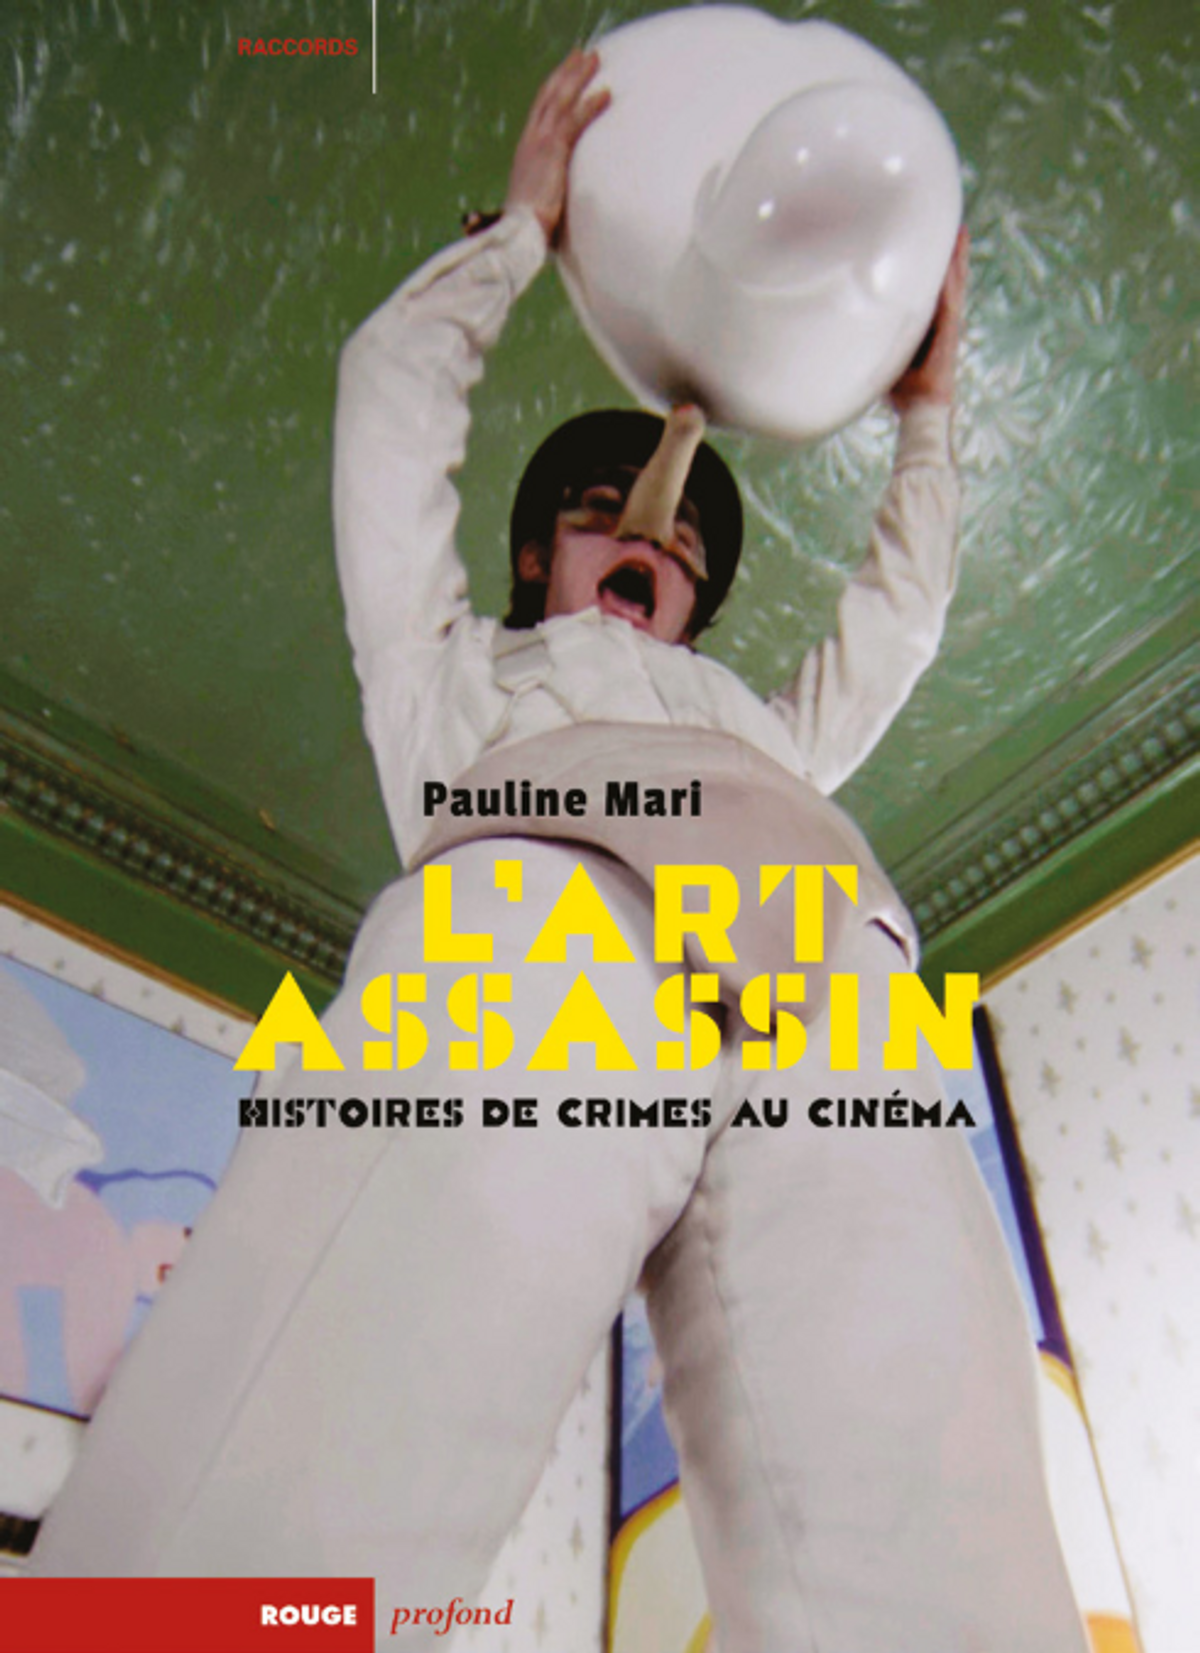 Pauline Mari, L’Art assassin. Histoires de crimes au cinéma, Aix-en Provence, Rouge profond, 2023, 273 pages, 26 euros.